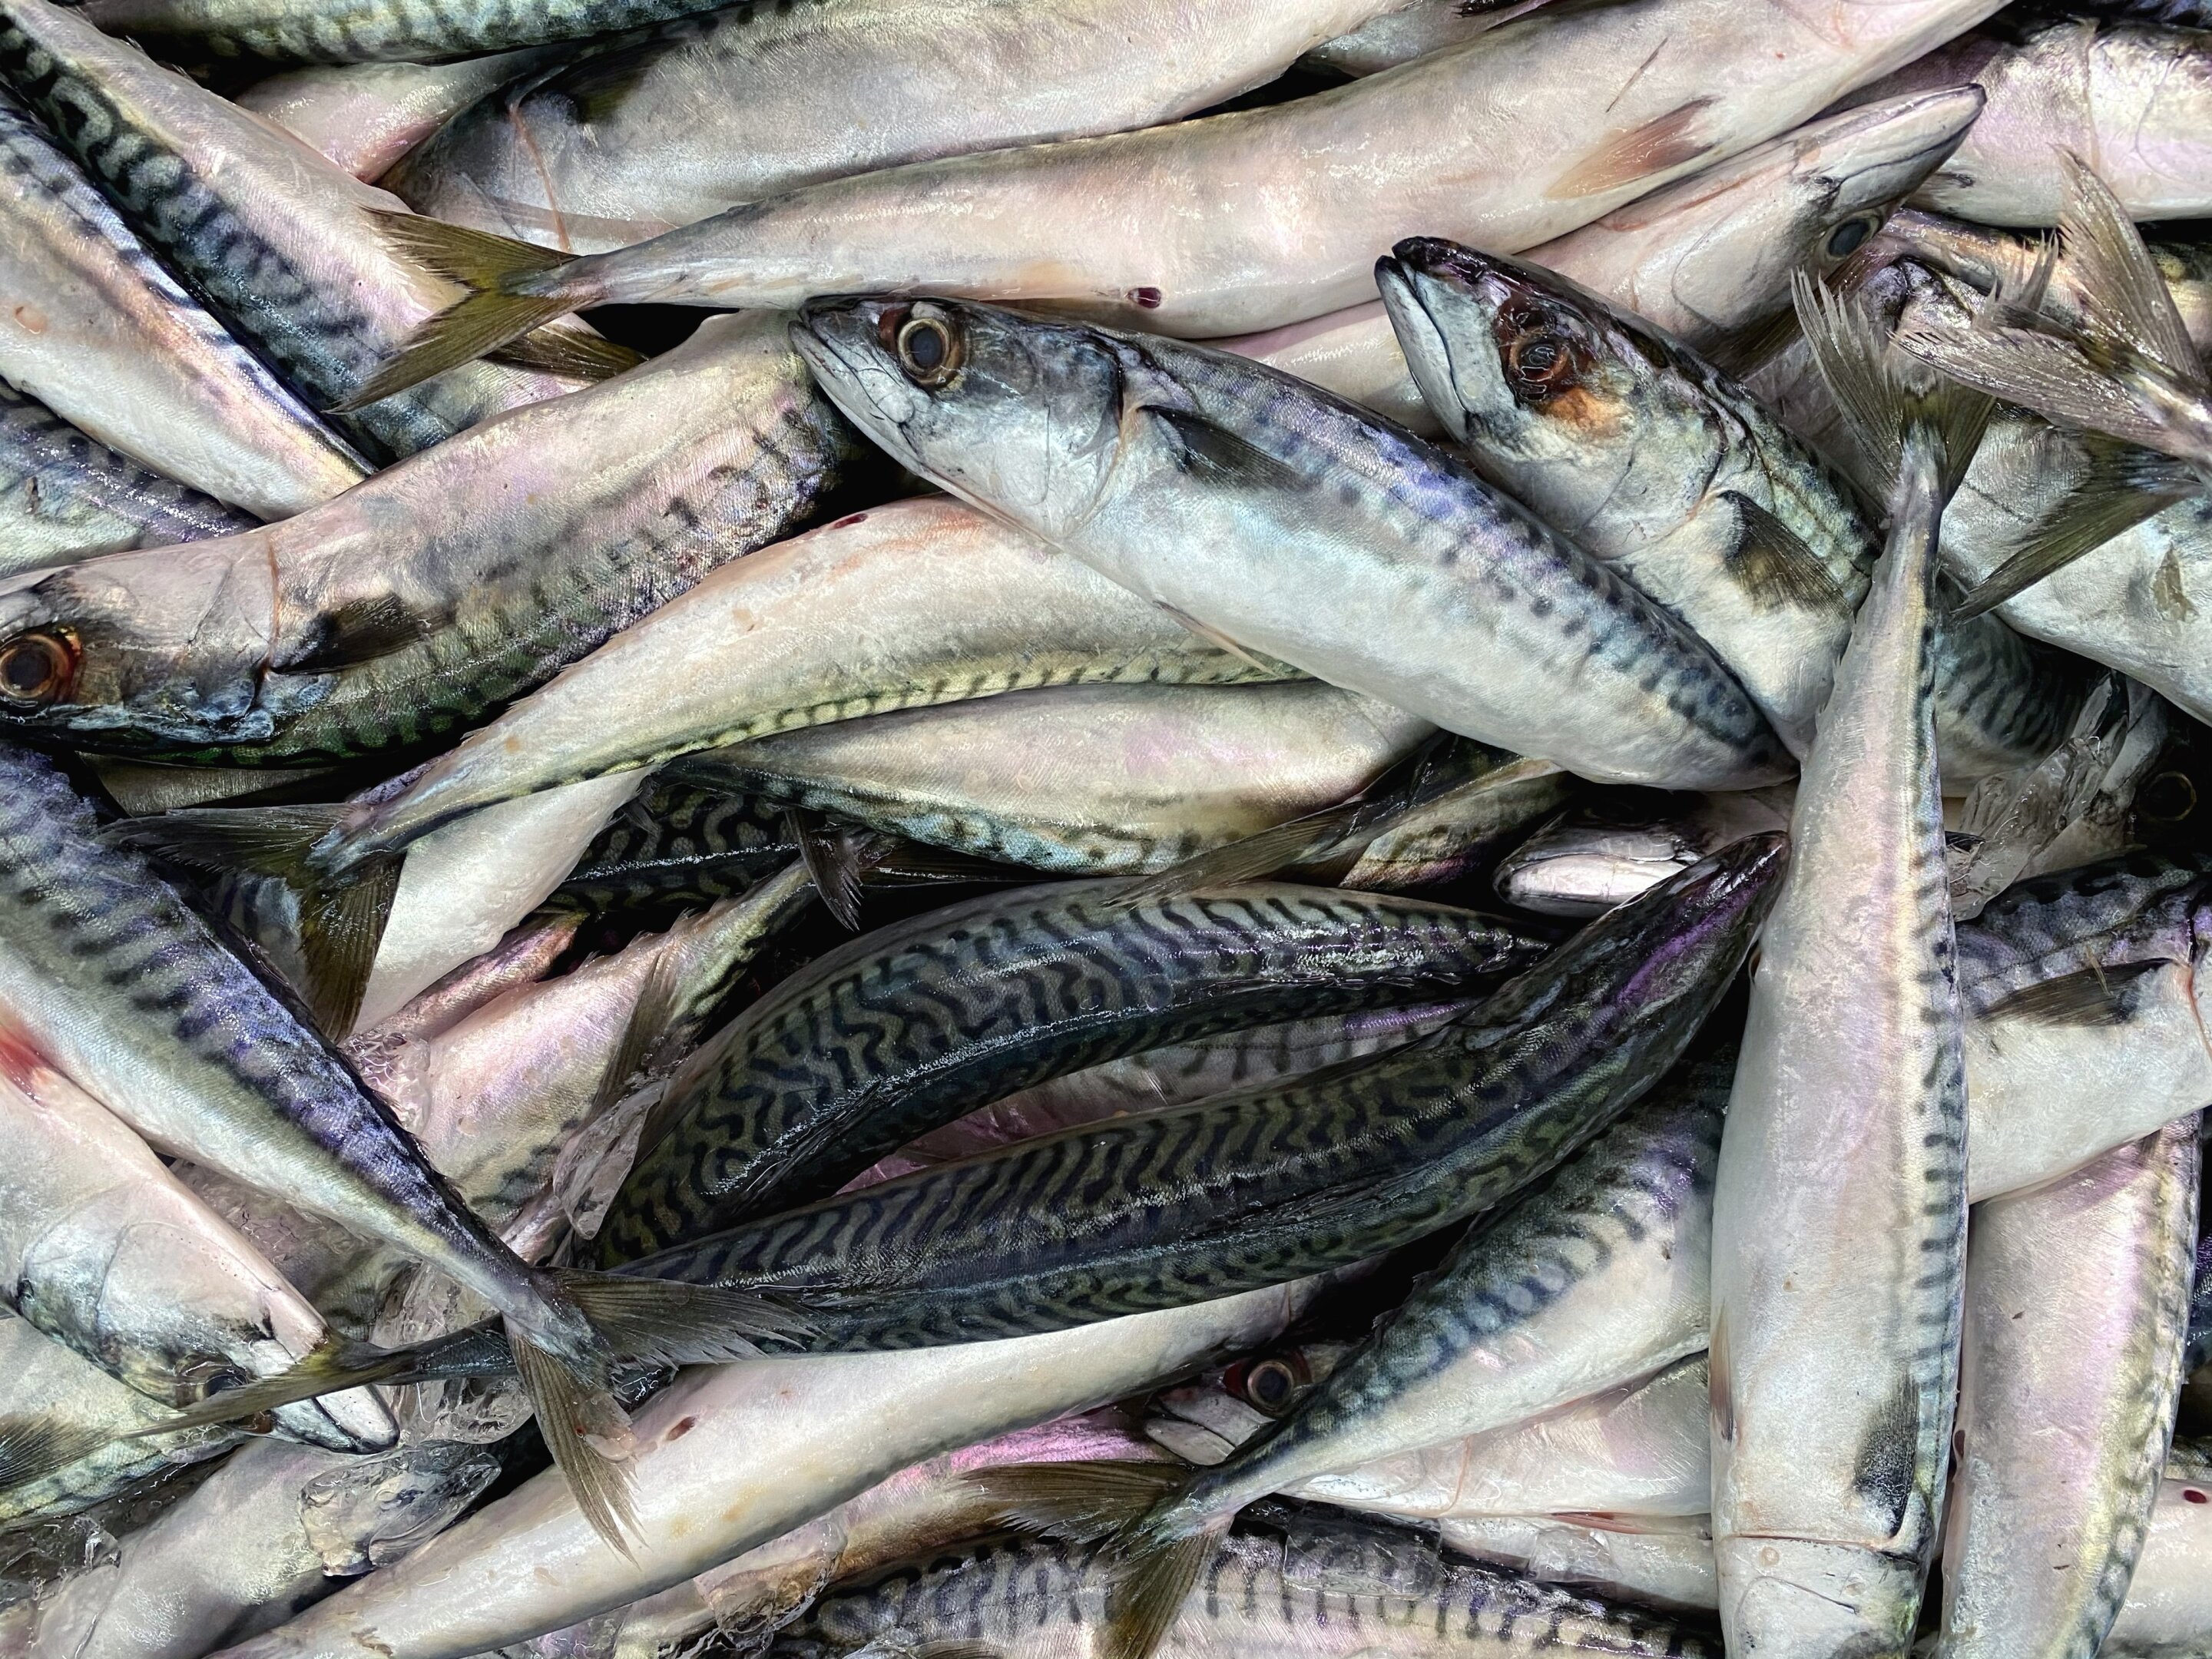 Les sardines sont toxiques et ont tué des restaurants en France